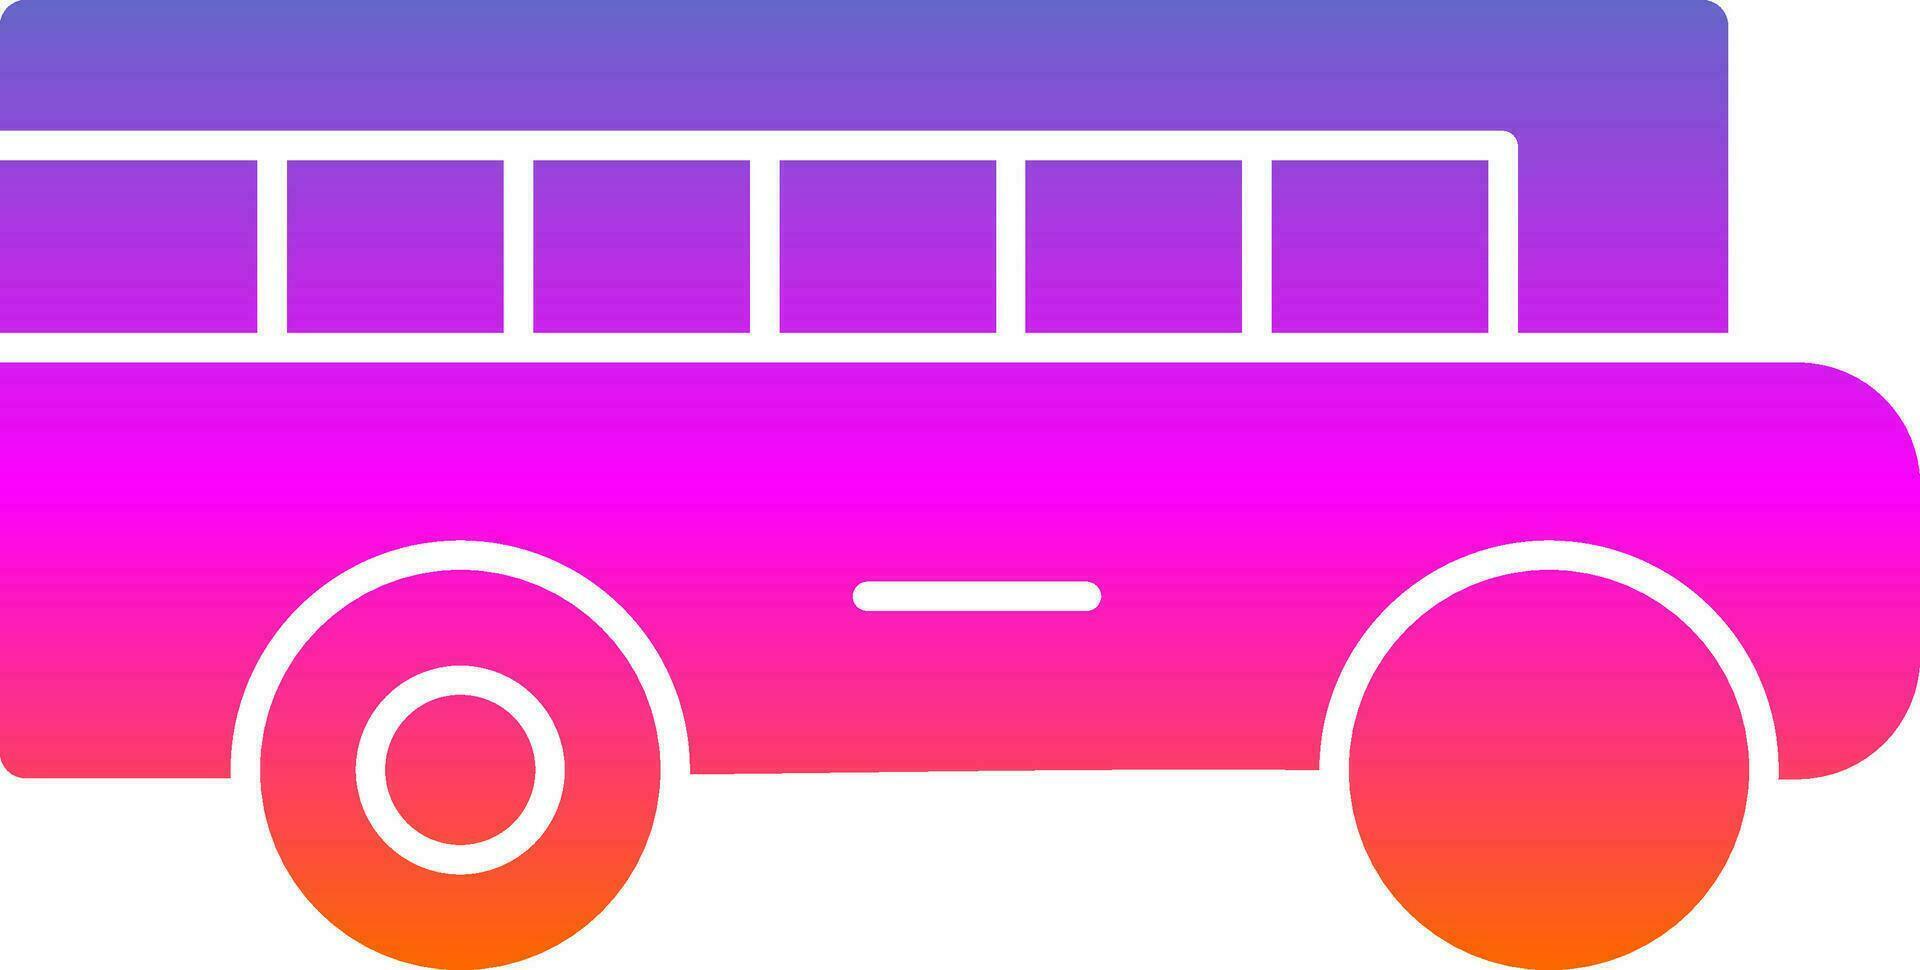 School bus Vector Icon Design